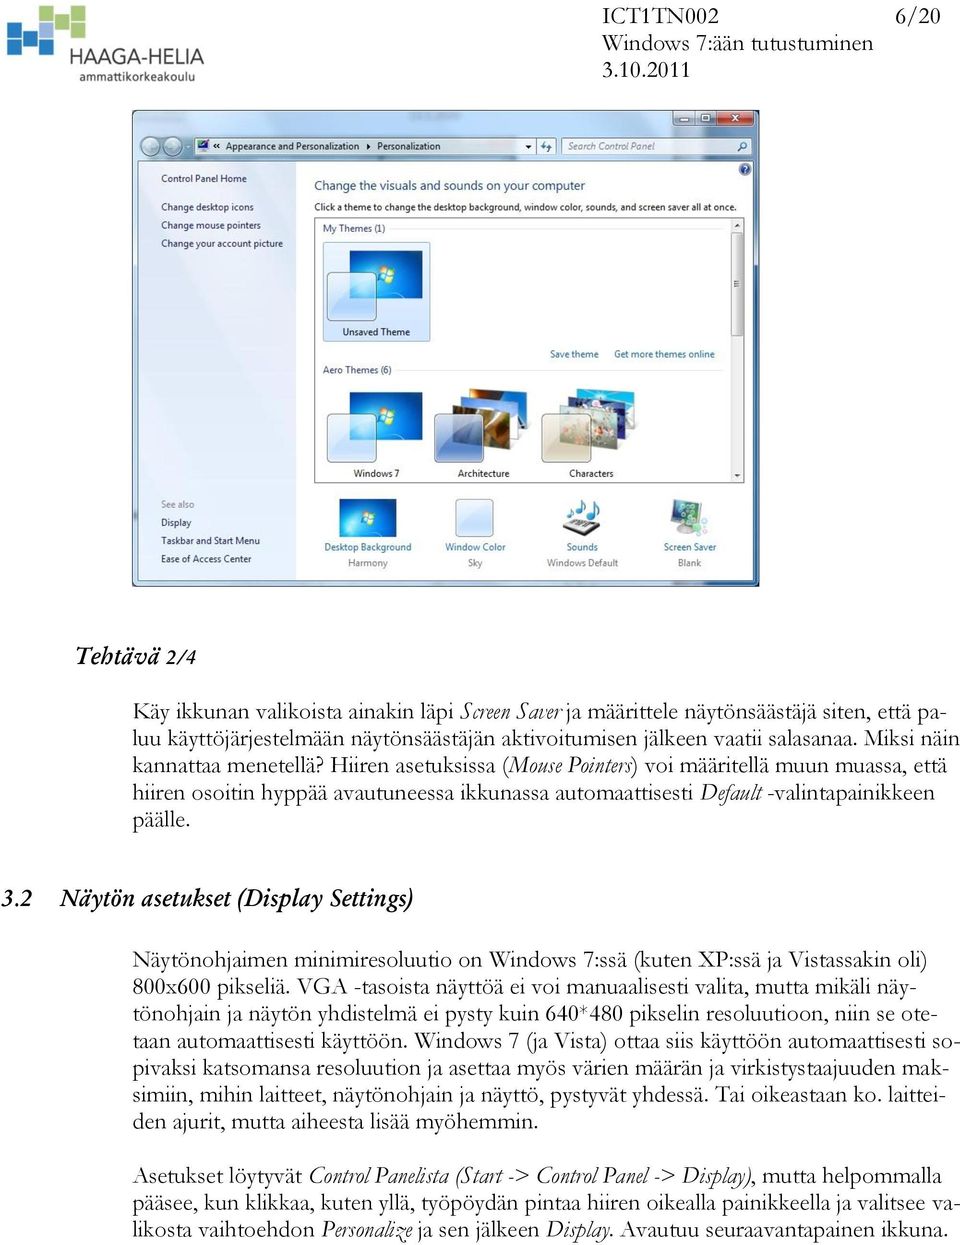 2 Näytön asetukset (Display Settings) Näytönohjaimen minimiresoluutio on Windows 7:ssä (kuten XP:ssä ja Vistassakin oli) 800x600 pikseliä.